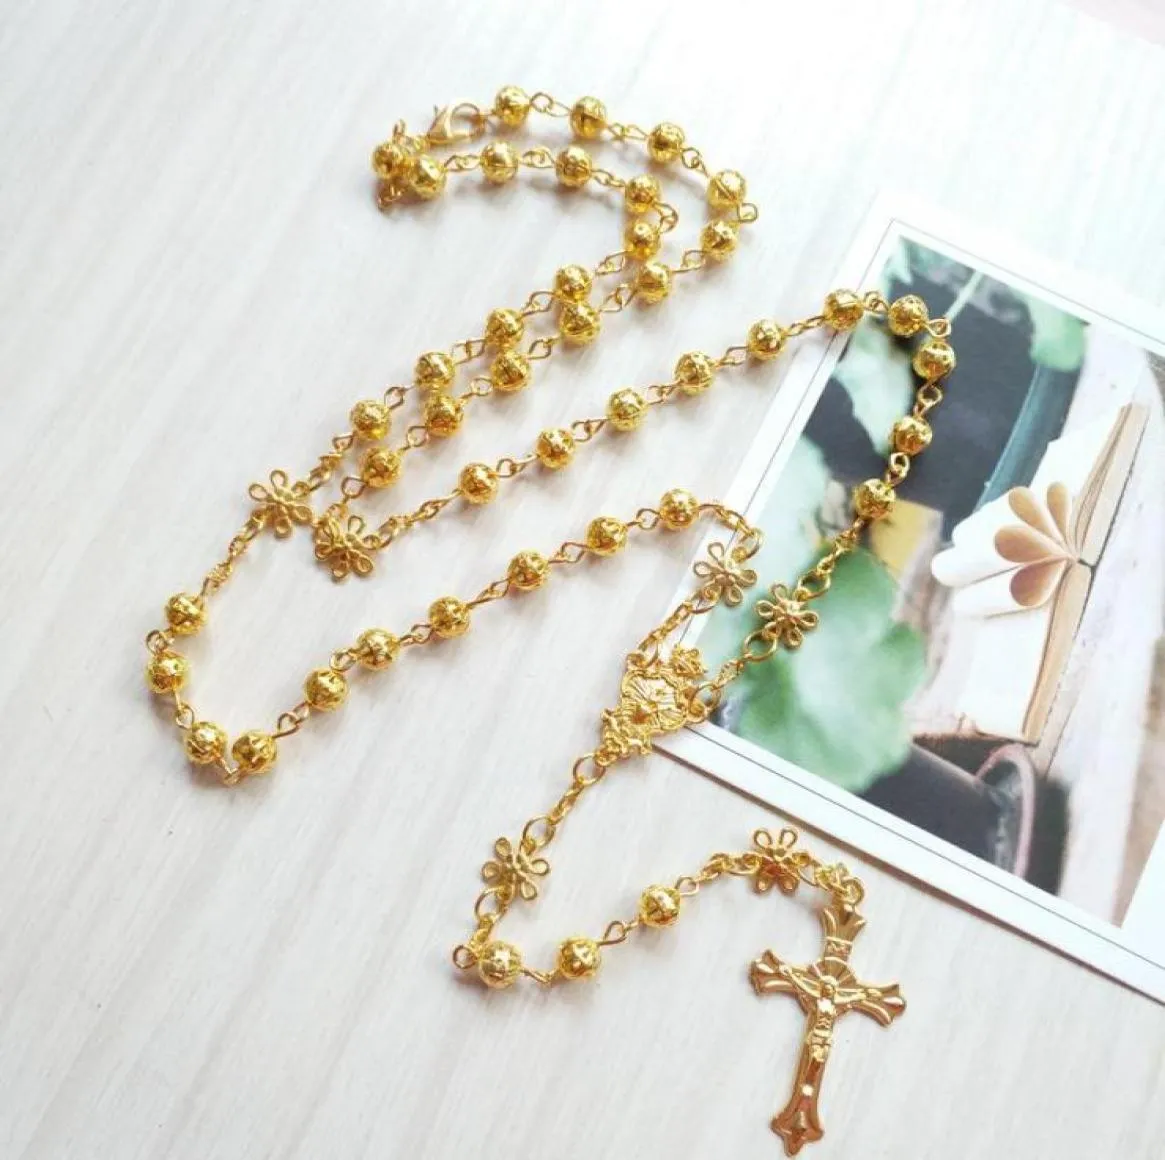 Naszyjniki wiszące religijne złoto różaniec naszyjnik kwiat puste koraliki modlitewne łańcuch katolicki krucyfiks krzyżyk kościelny biżuteria h6021685